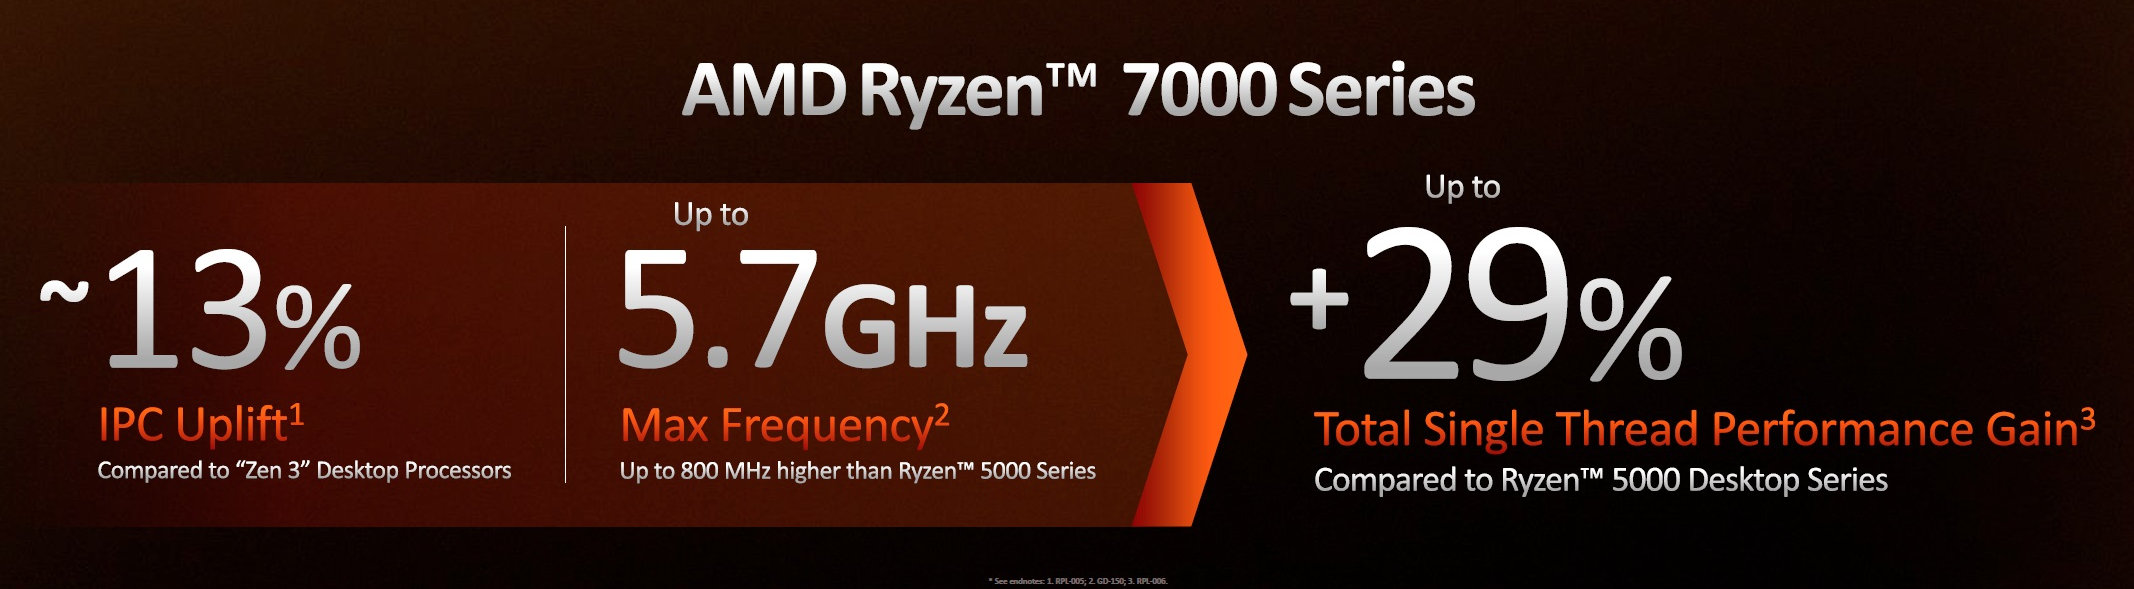 AMD Ryzen 7000 Series Desktop Processors